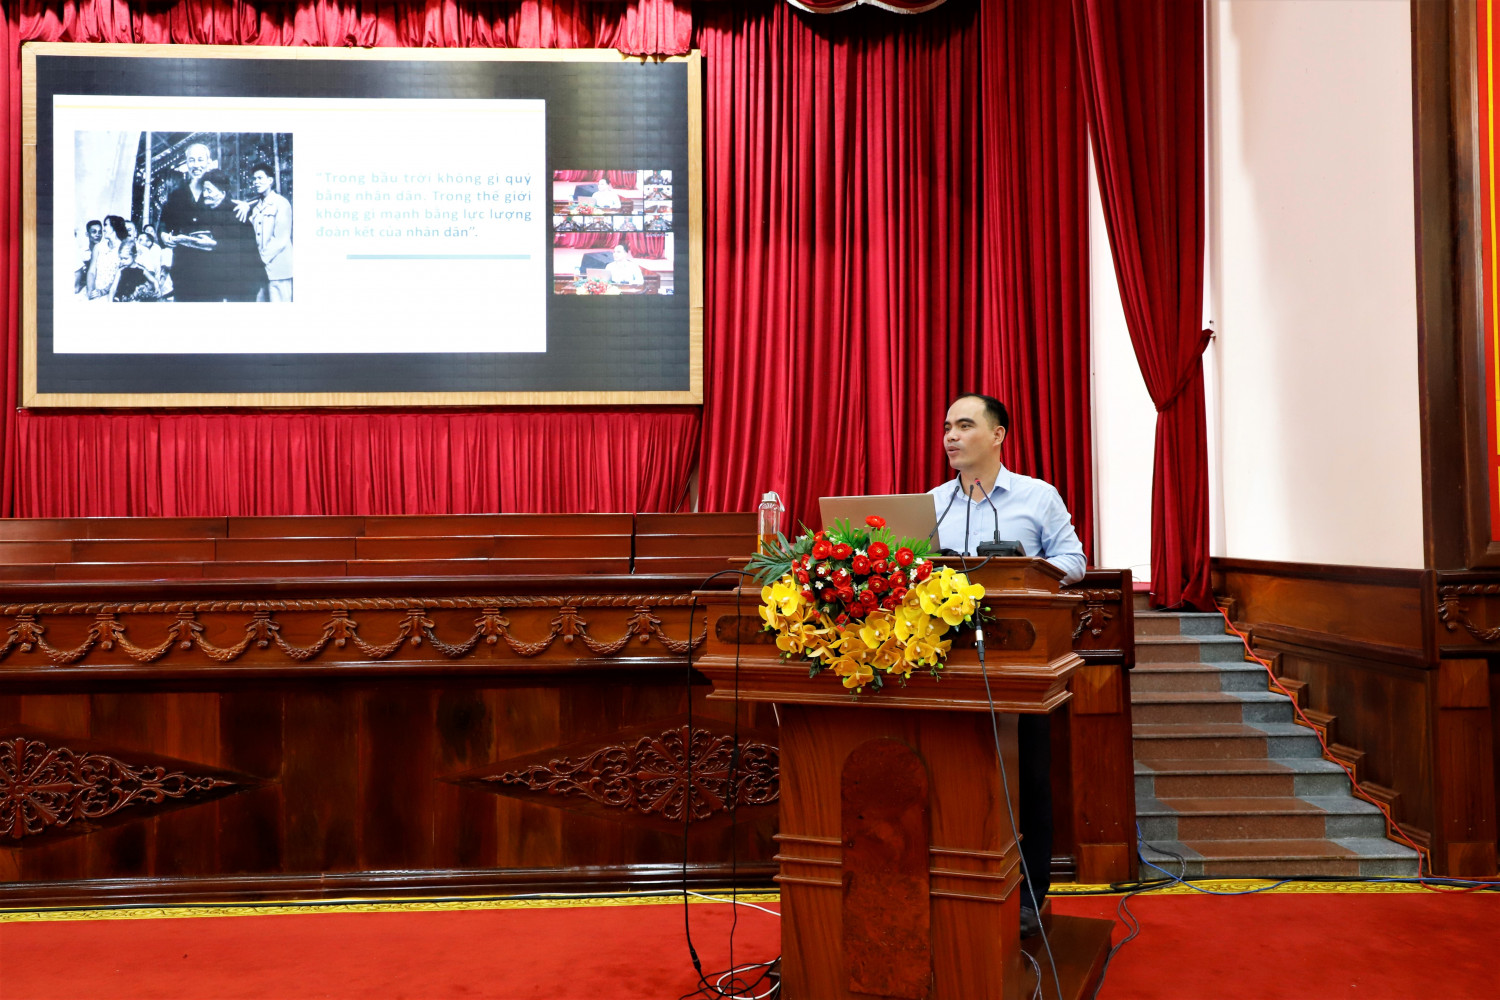 Trung tá, Tiến sĩ Lê Hoàng Việt Lâm, Giảng viên chính, Trường Đại học An ninh nhân dân giới thiệu các nội dung tại buổi sinh hoạt